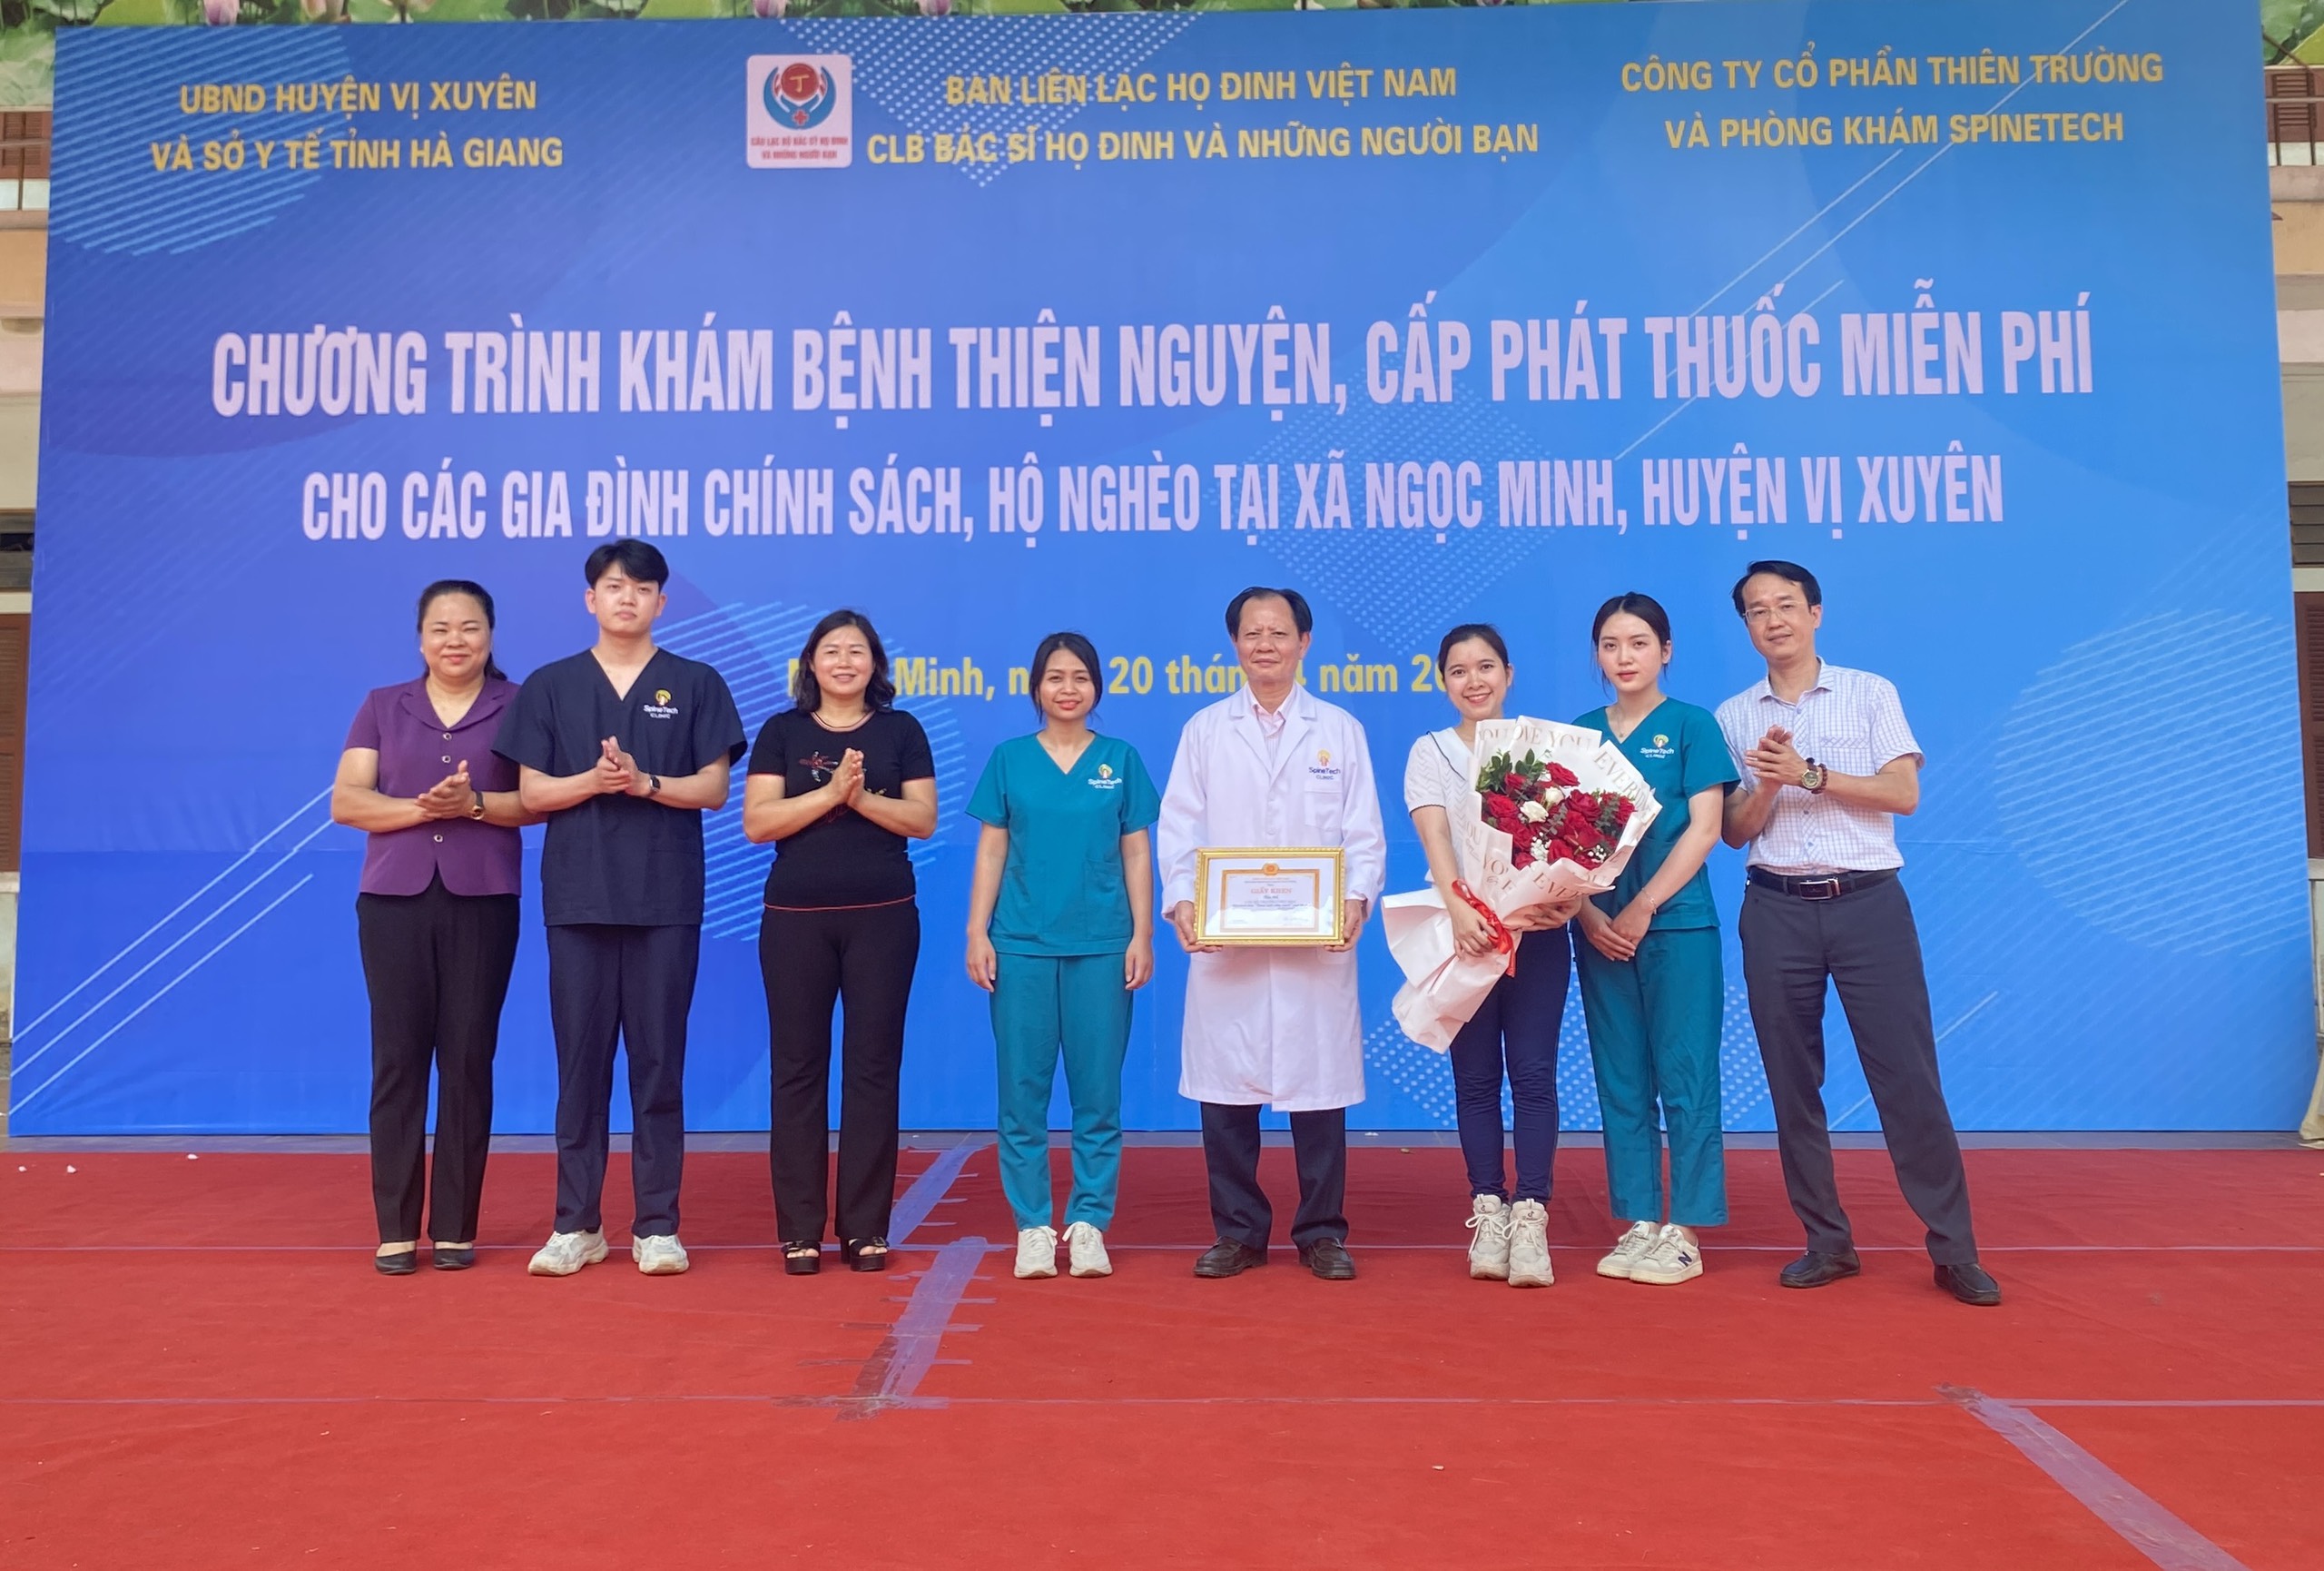 UBND huyện Vị Xuyên khen thưởng cho Tập thể đã có thành tích xuất sắc trong công tác khám chữa bệnh thiện nguyện